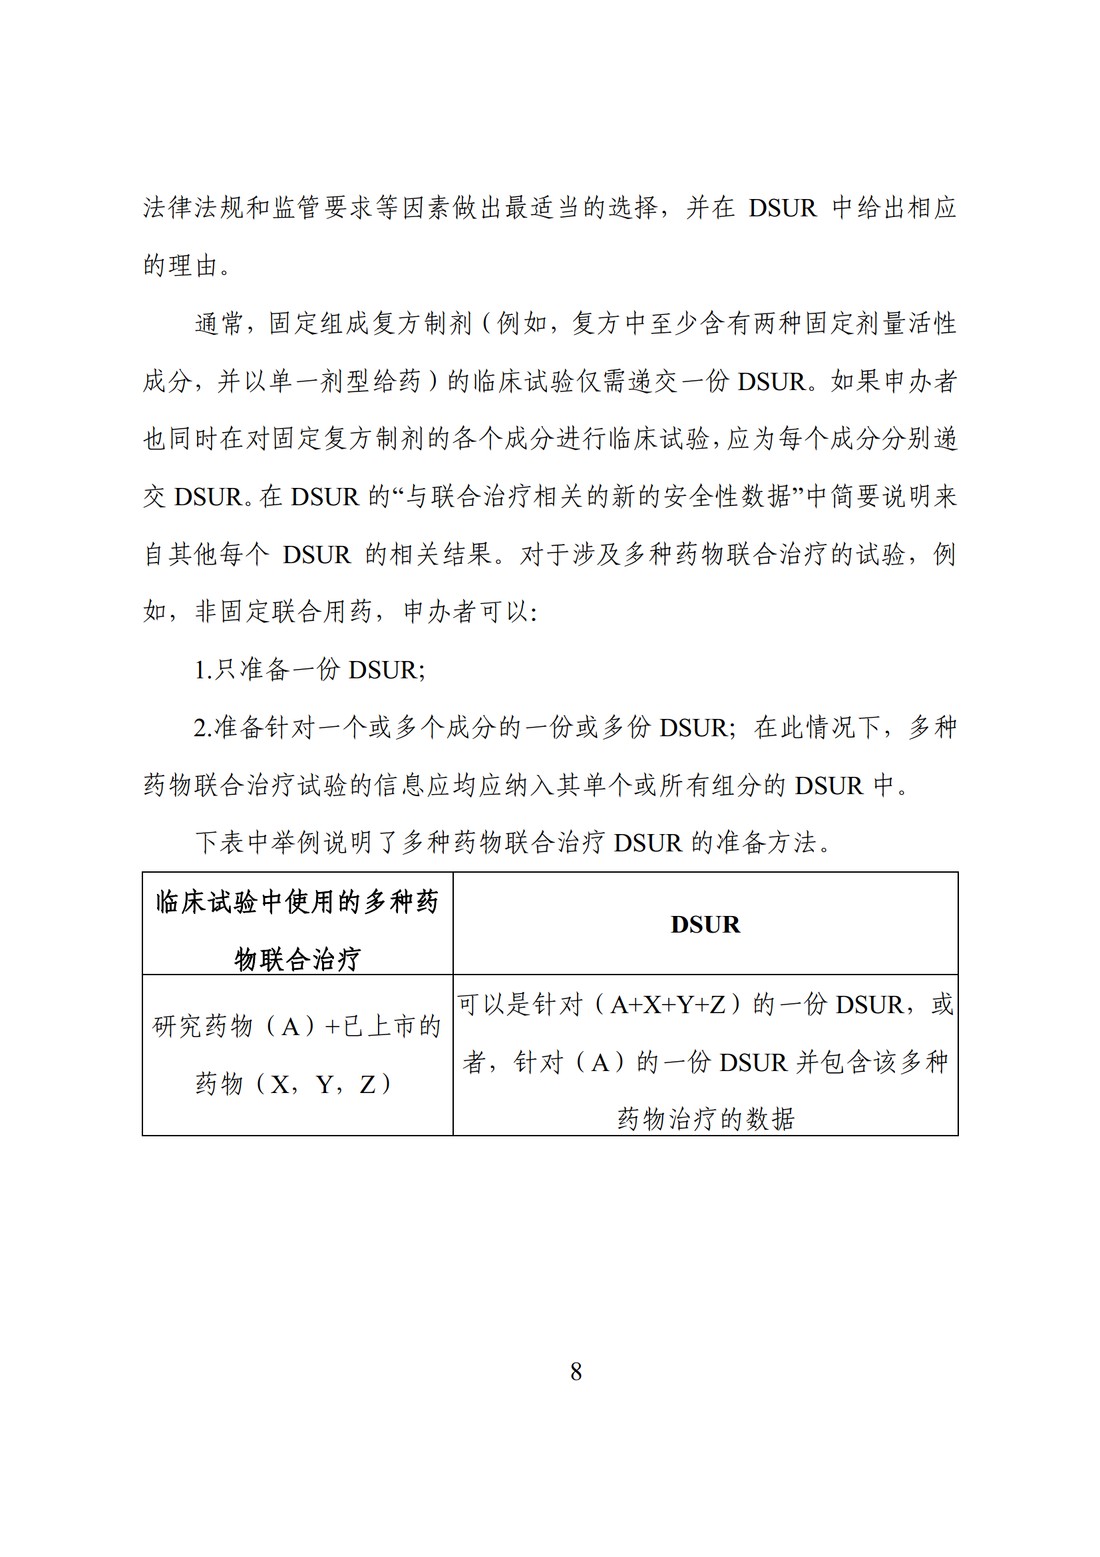 E2F 研发期间安全性更新报告(中文翻译公开征求意见稿)_13.jpg